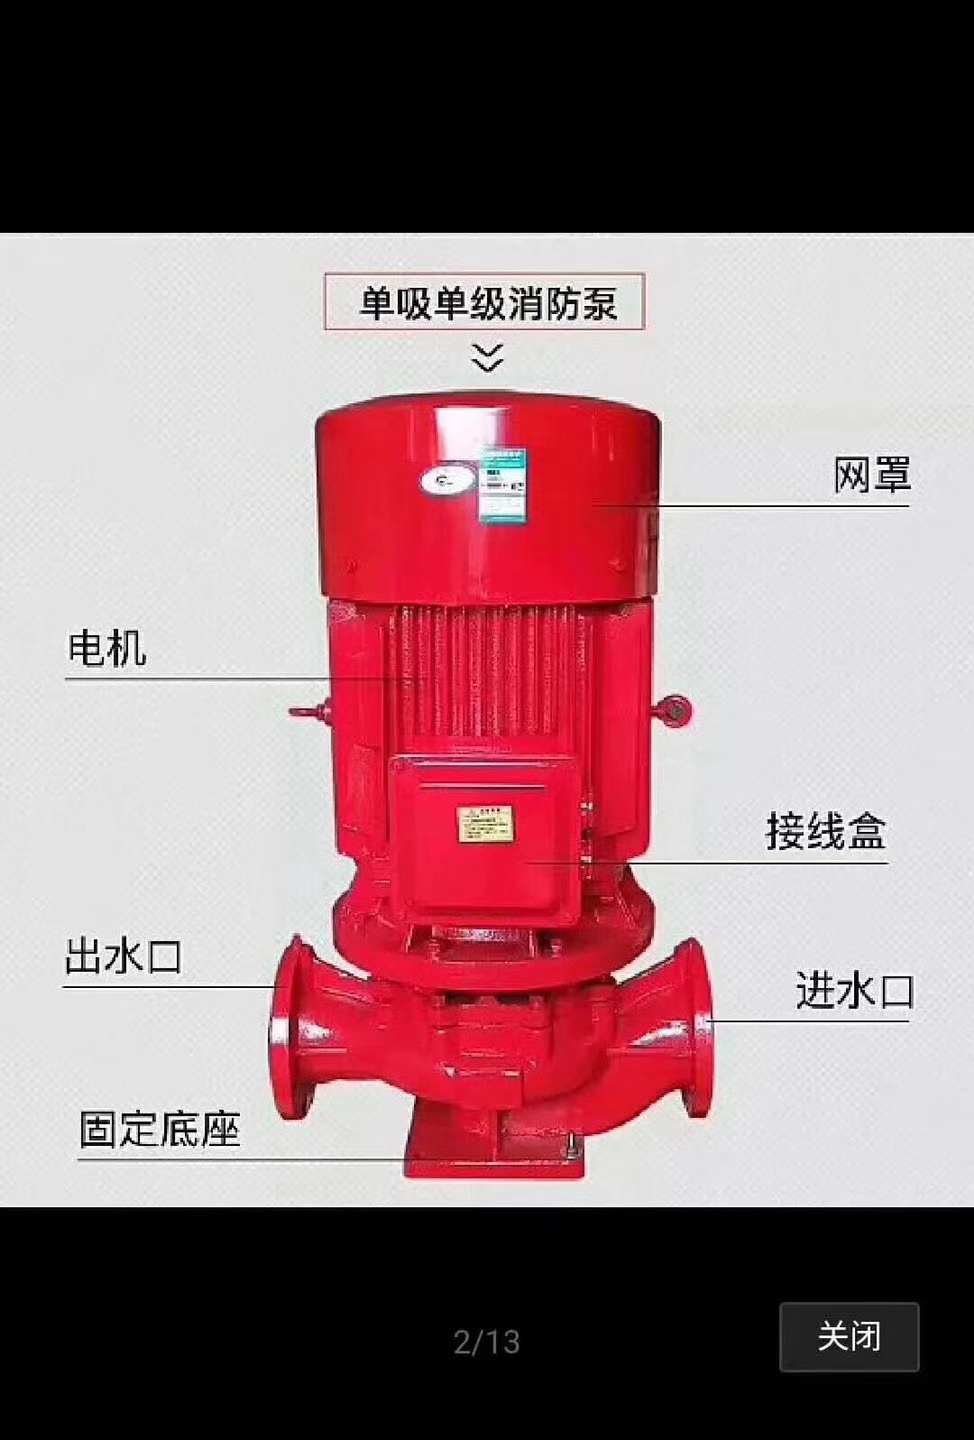 上海厂家直销立式消防栓泵3CF认证XBD14.5/20G-L 75KW 新报价   cccf消防泵厂家直销